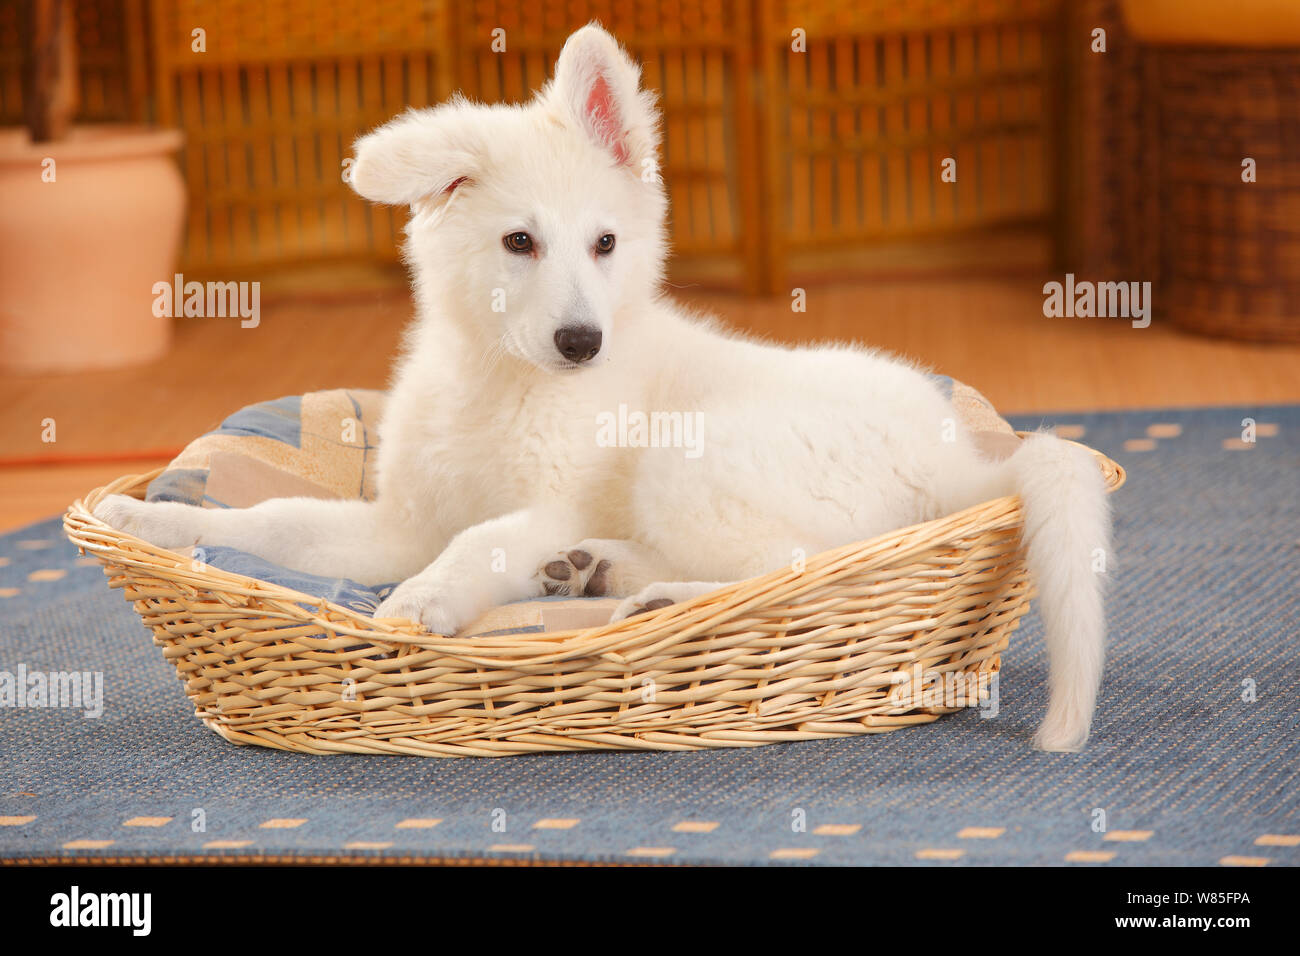 Weisser Schweizer Schäferhund, Welpen Alter 14 Wochen in Korb ruht  Stockfotografie - Alamy